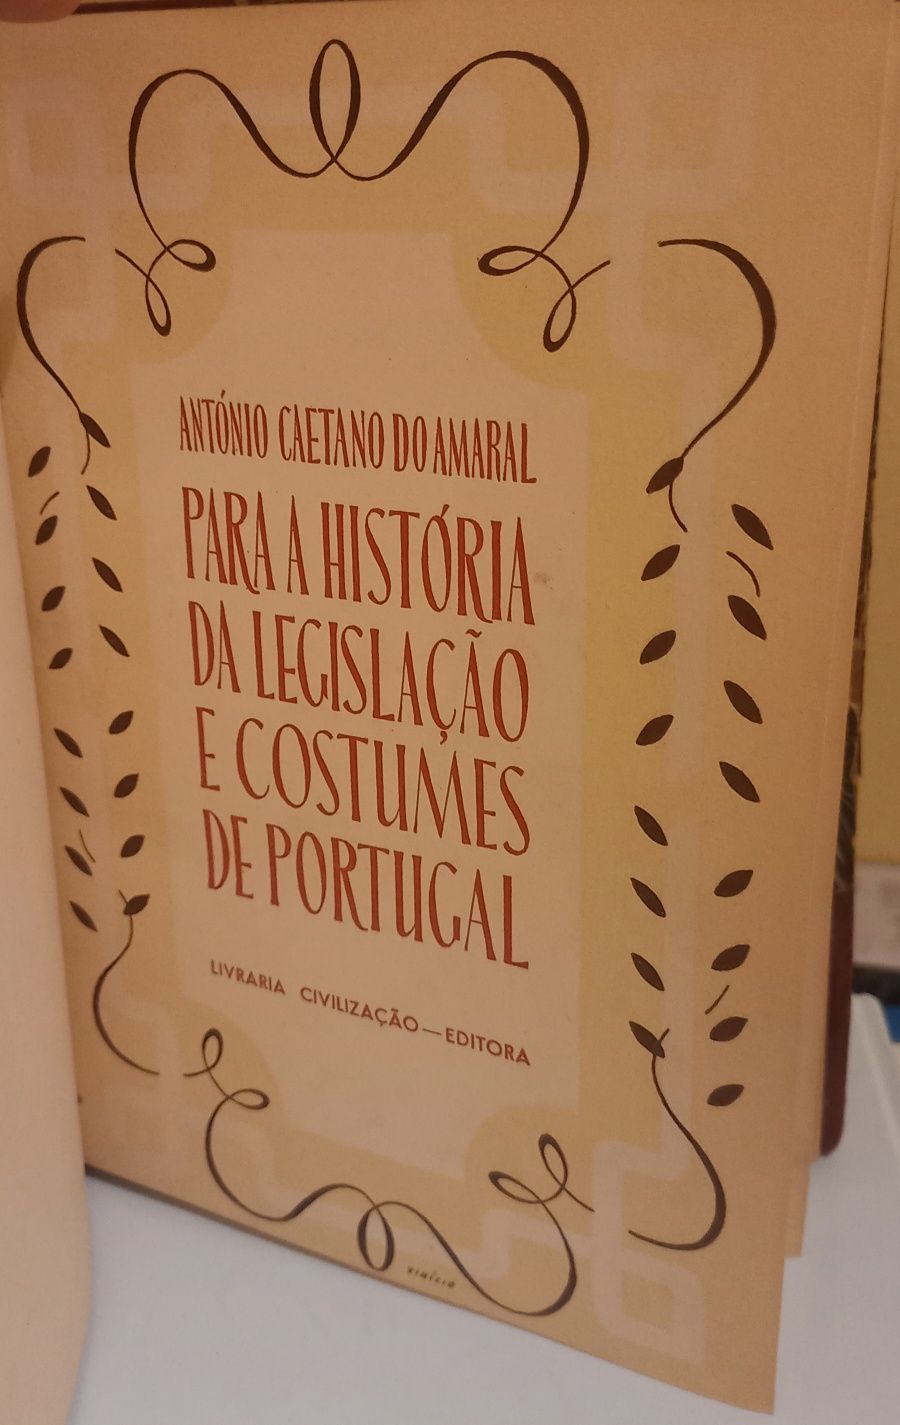 Livro "Para a História da Legislação e Costumes de Portugal "